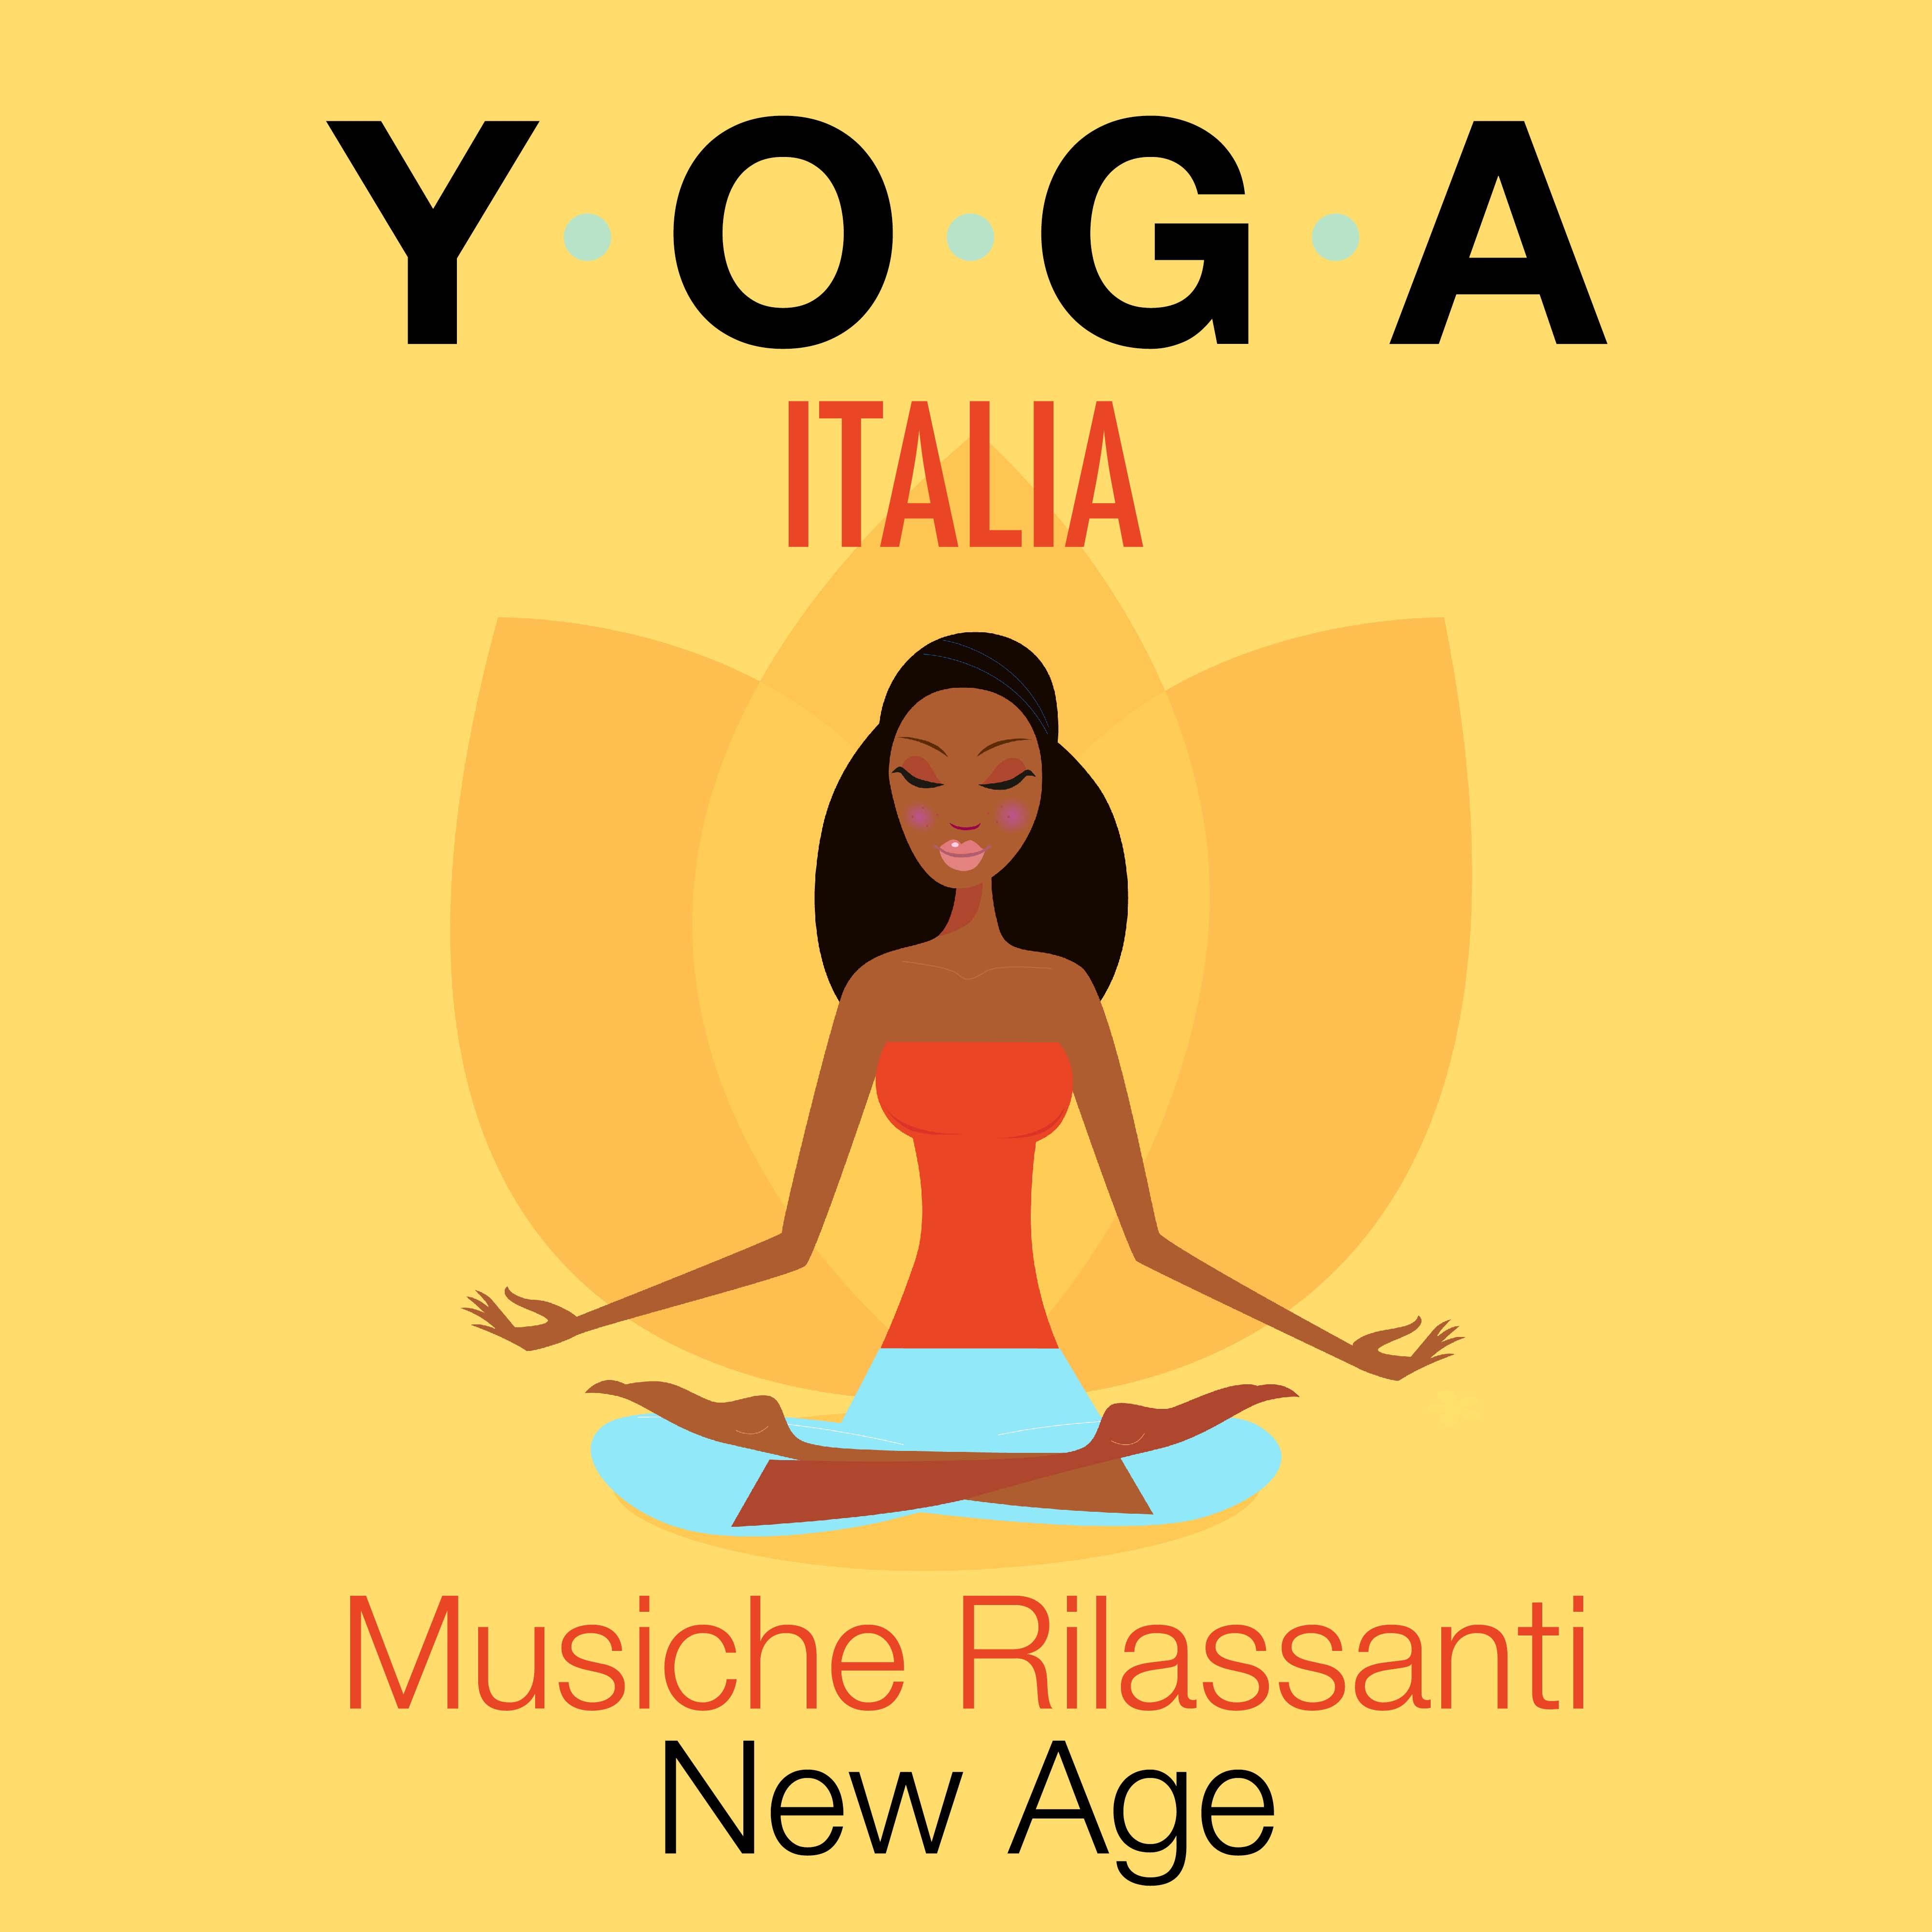 Yoga Italia - Musiche Rilassanti New Age